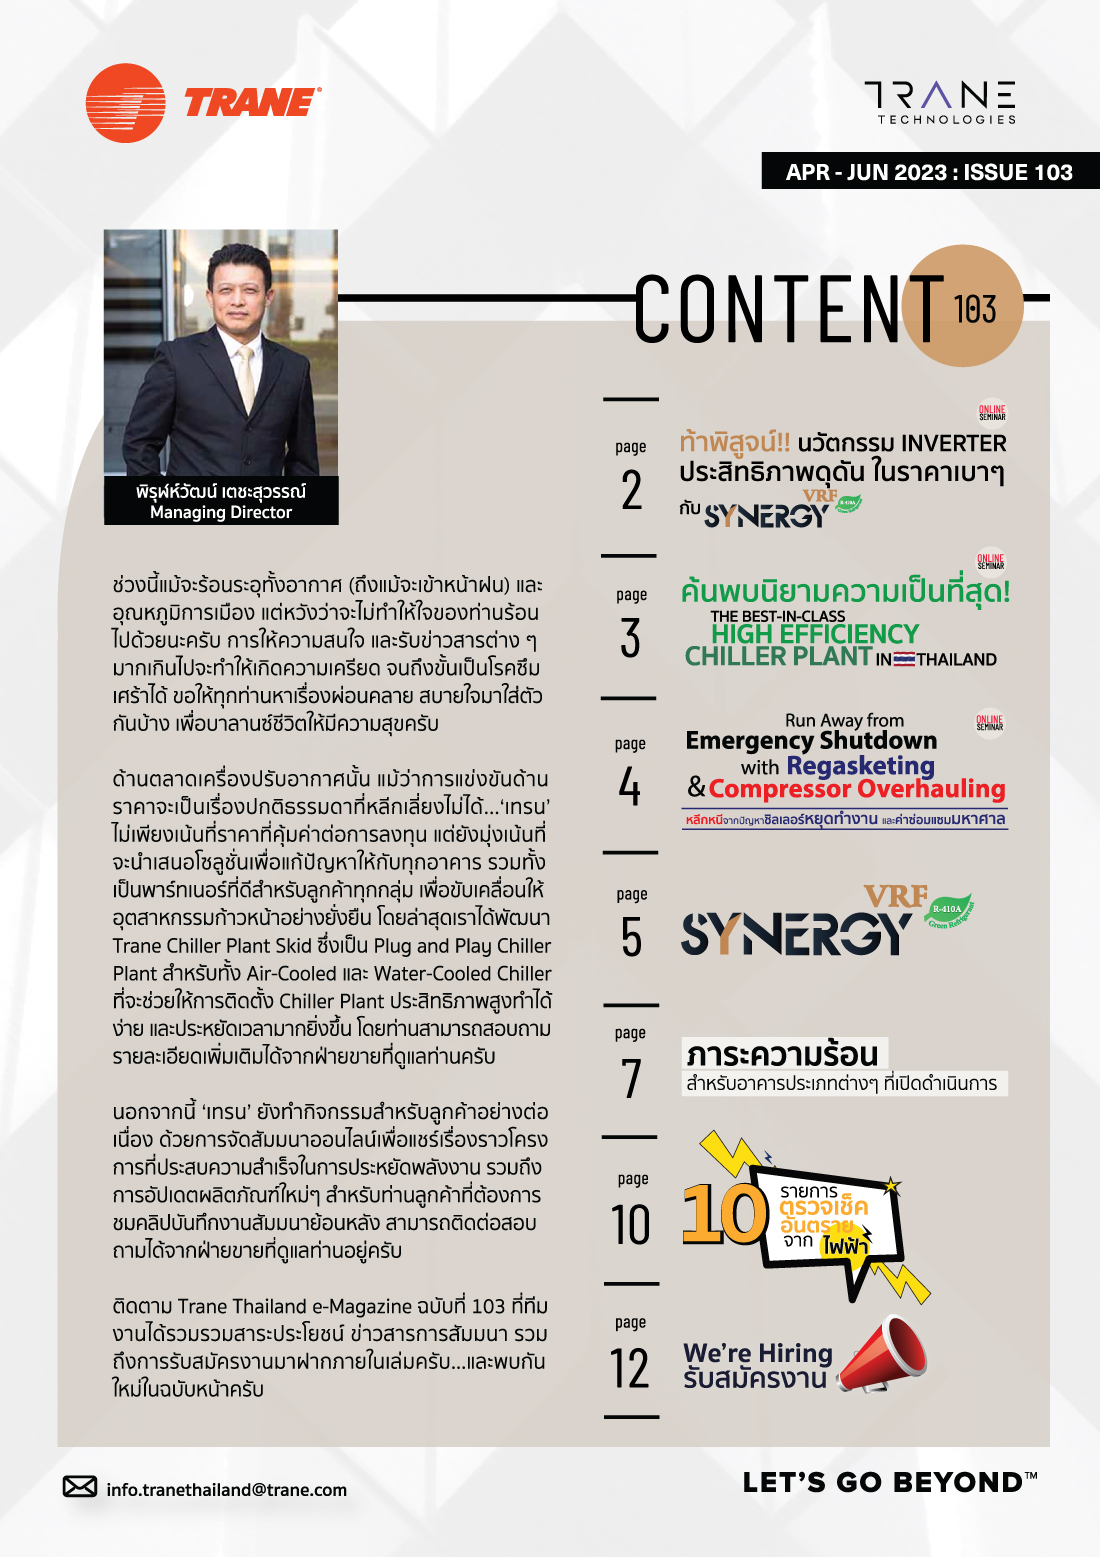 Trane Thailand e-Magazine Issue 103